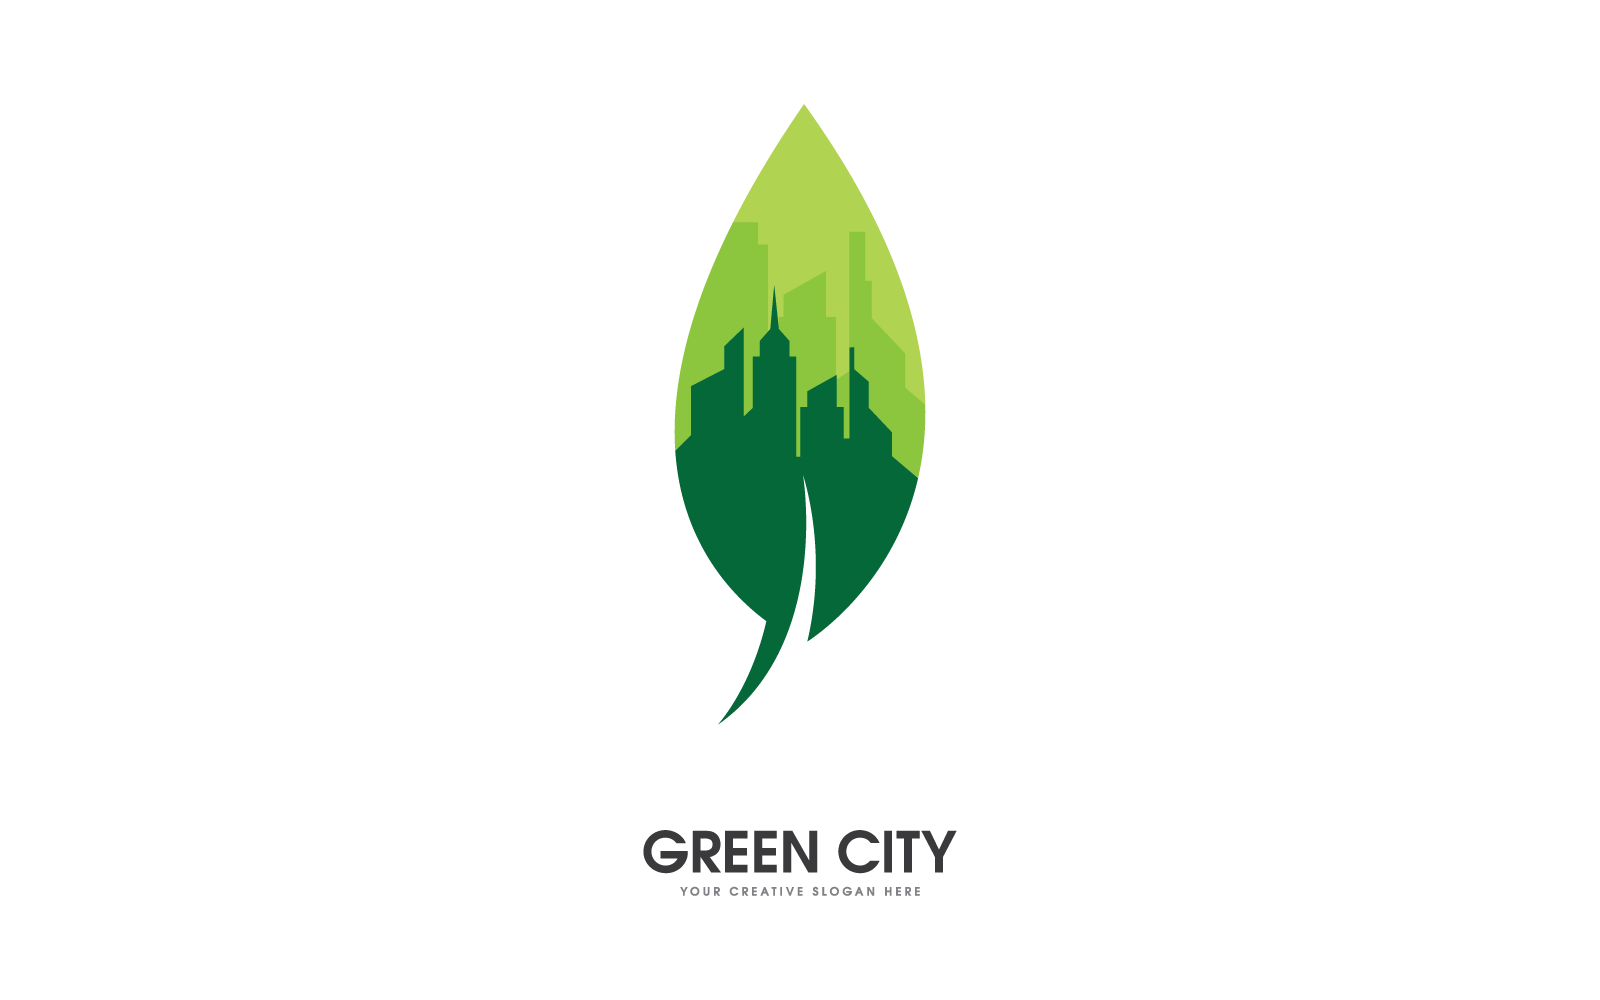 Green city logo illustration vector design